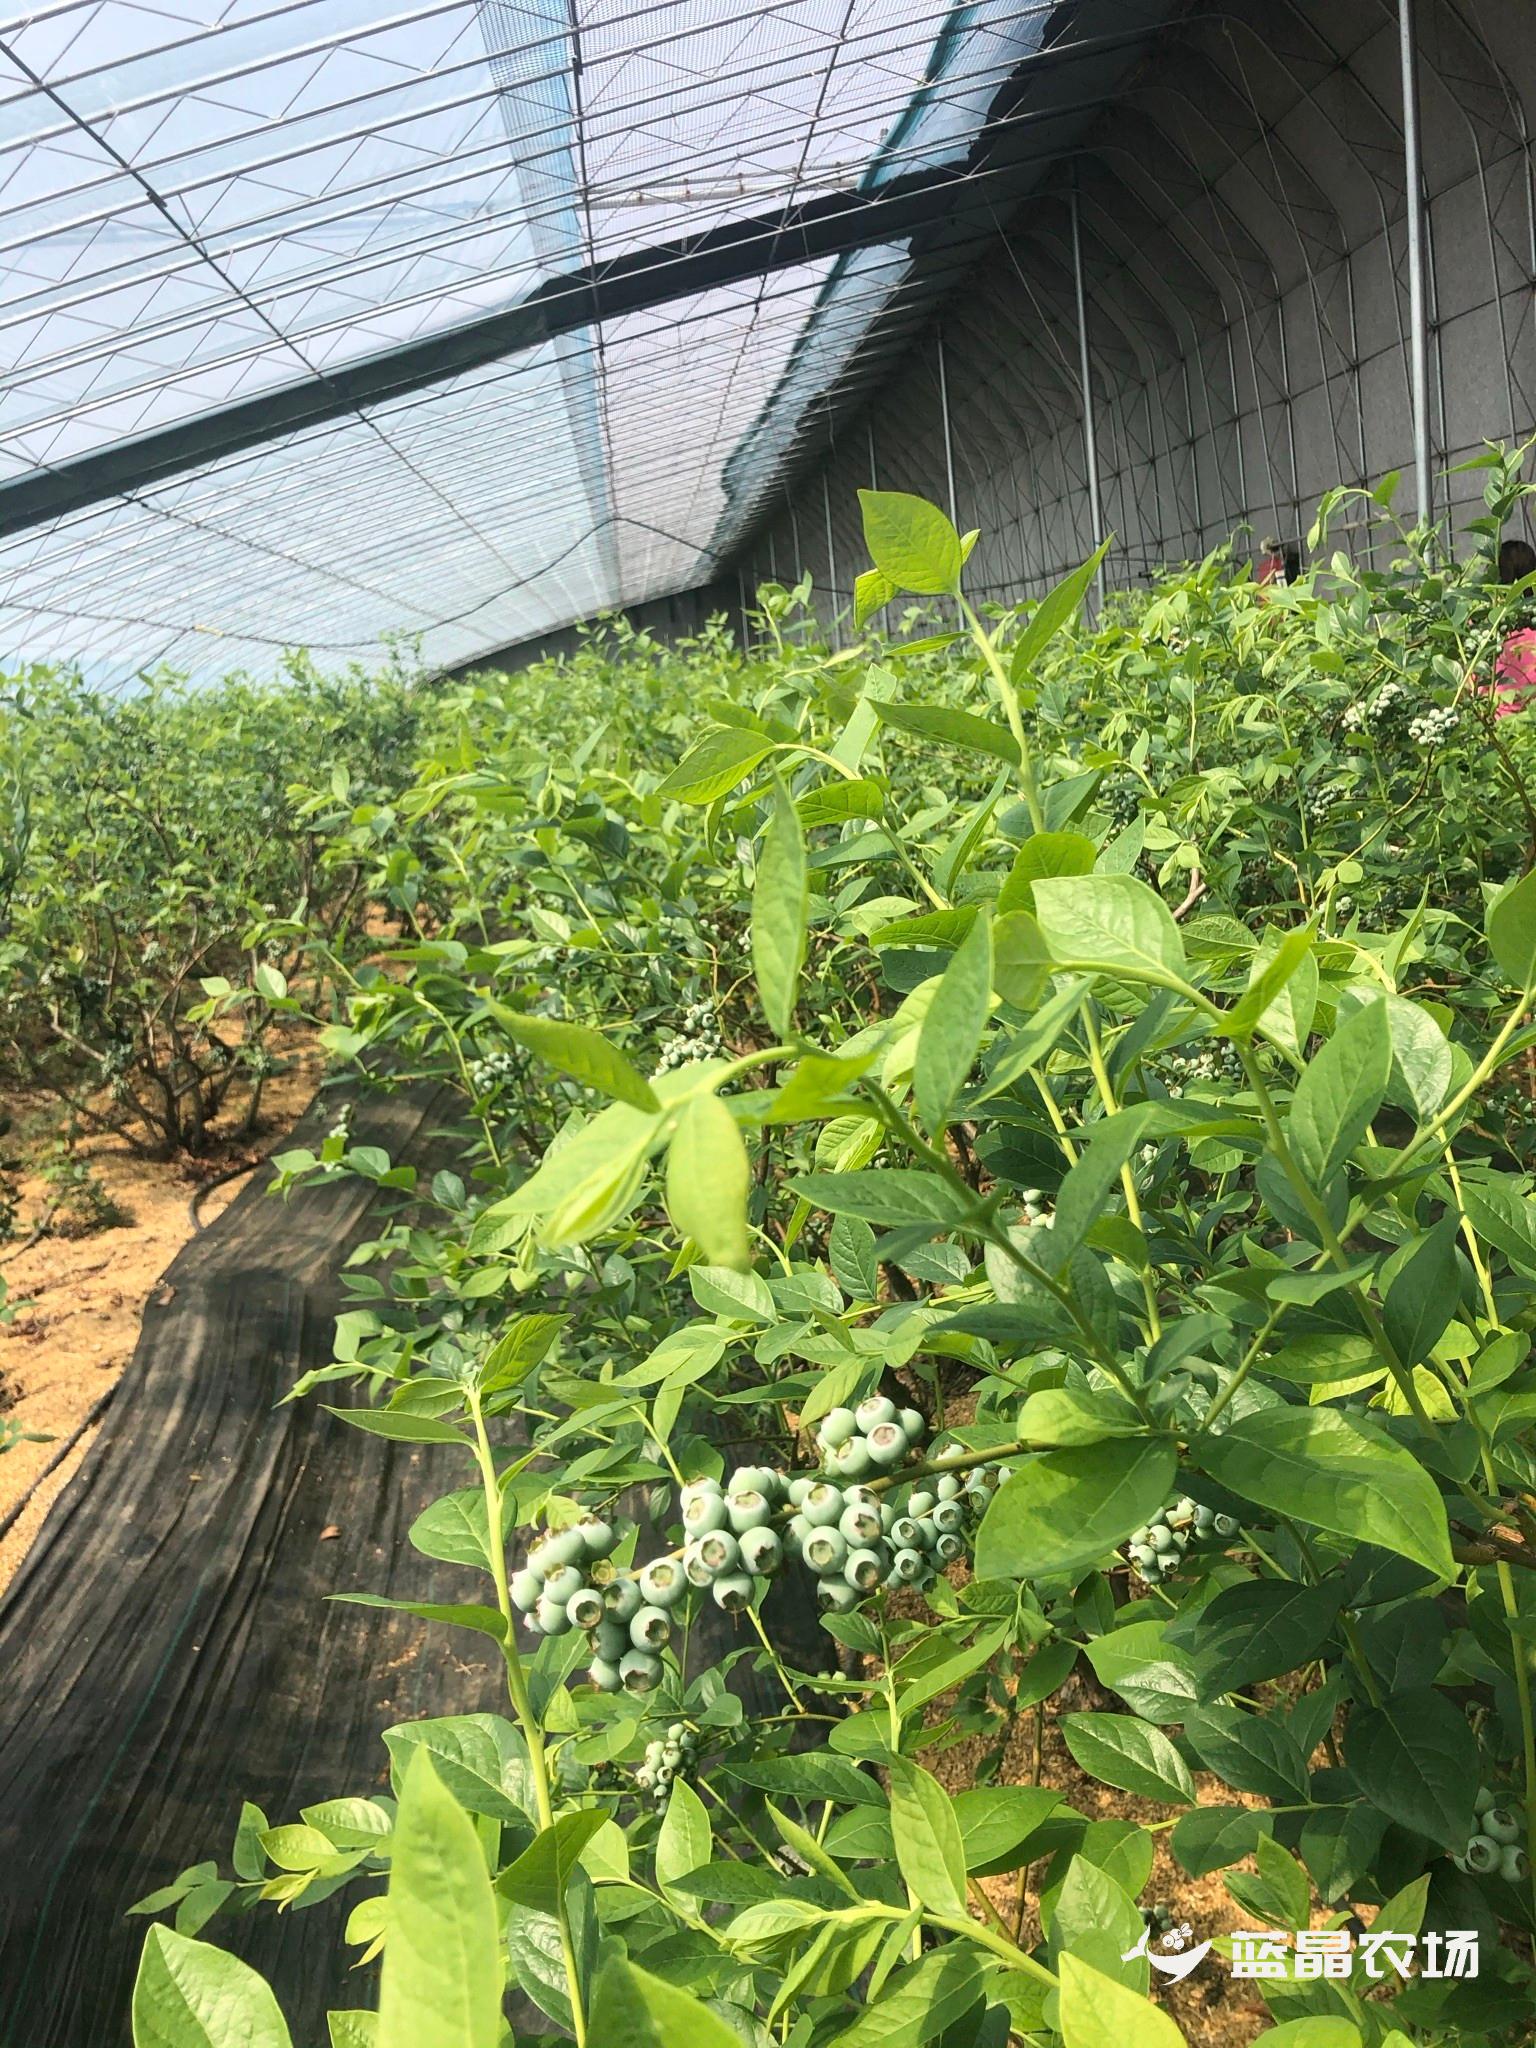 英国的棚、美国的种、以色列的滴灌，凉山会东“混血”蓝莓今年可实现产值2亿元 - 封面新闻